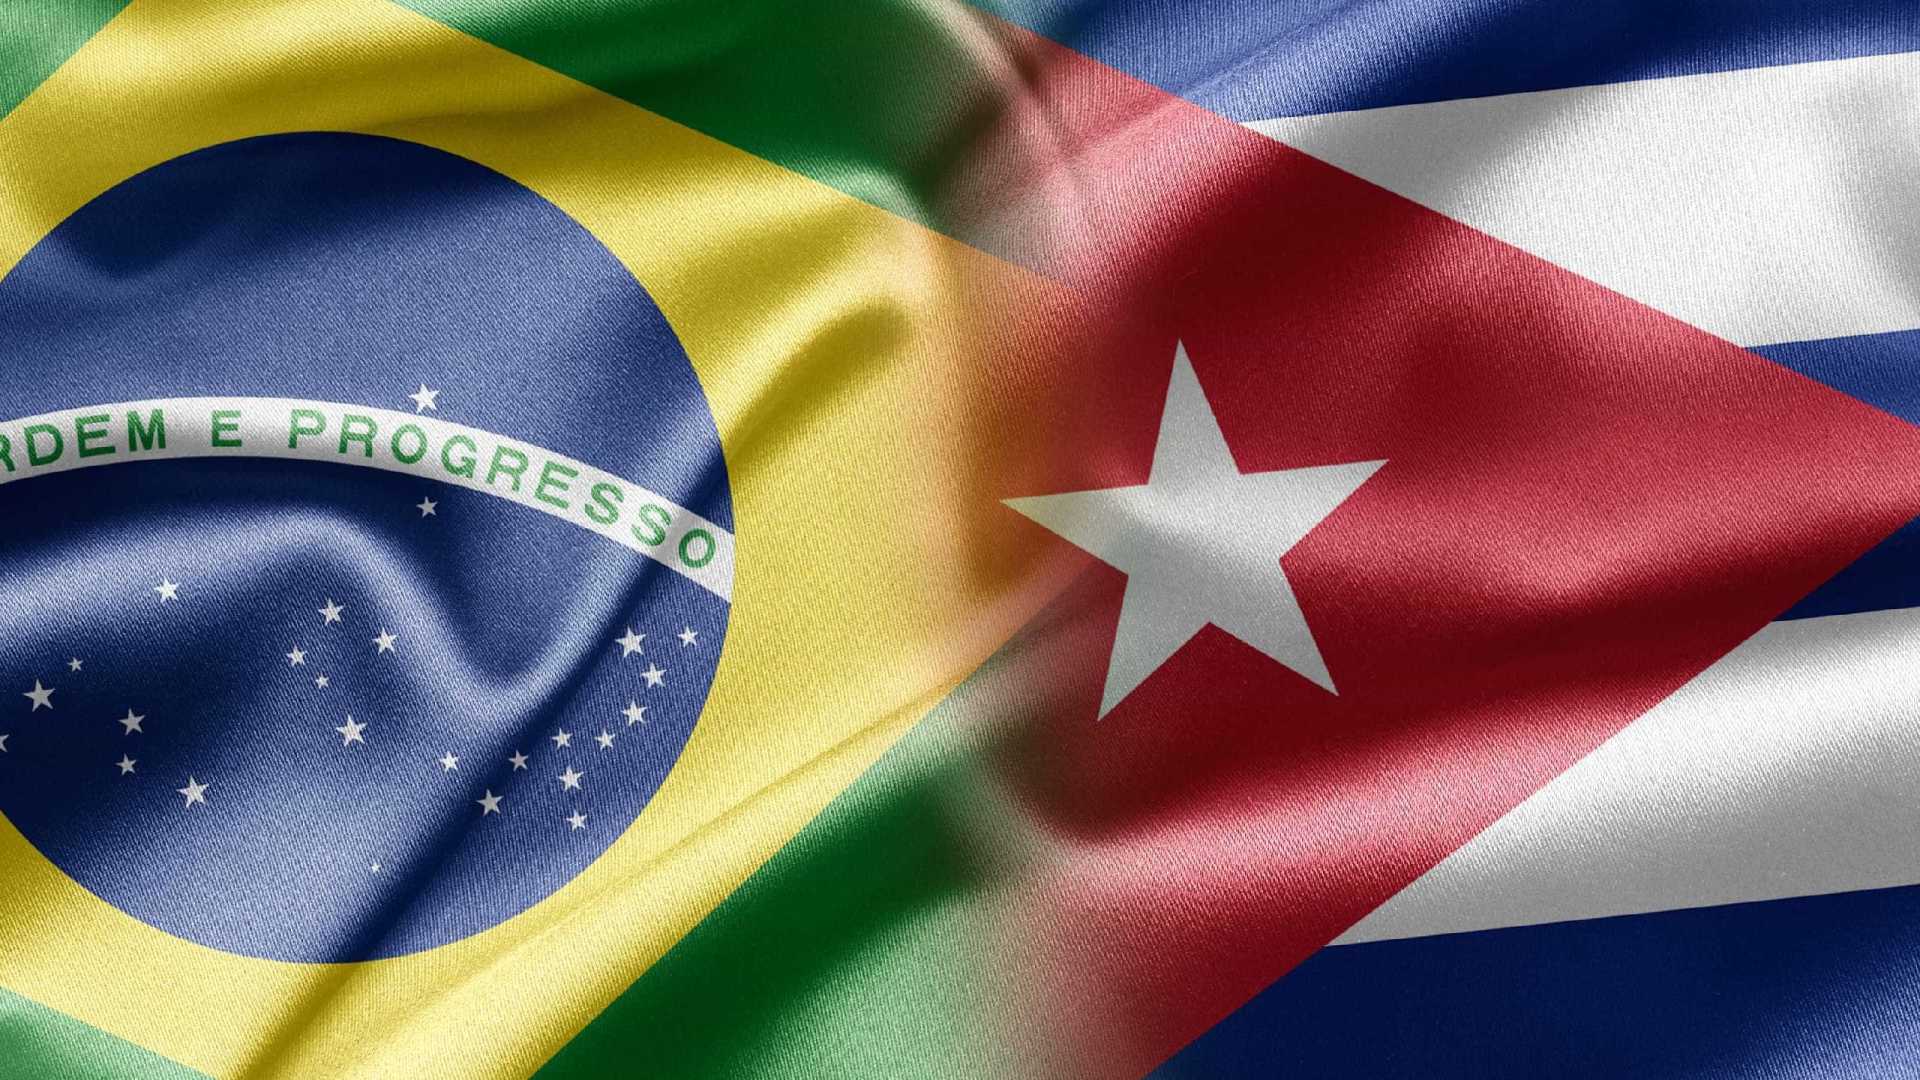 Cuba cancela parceria com Brasil no Mais Médicos; Bolsonaro é o motivo